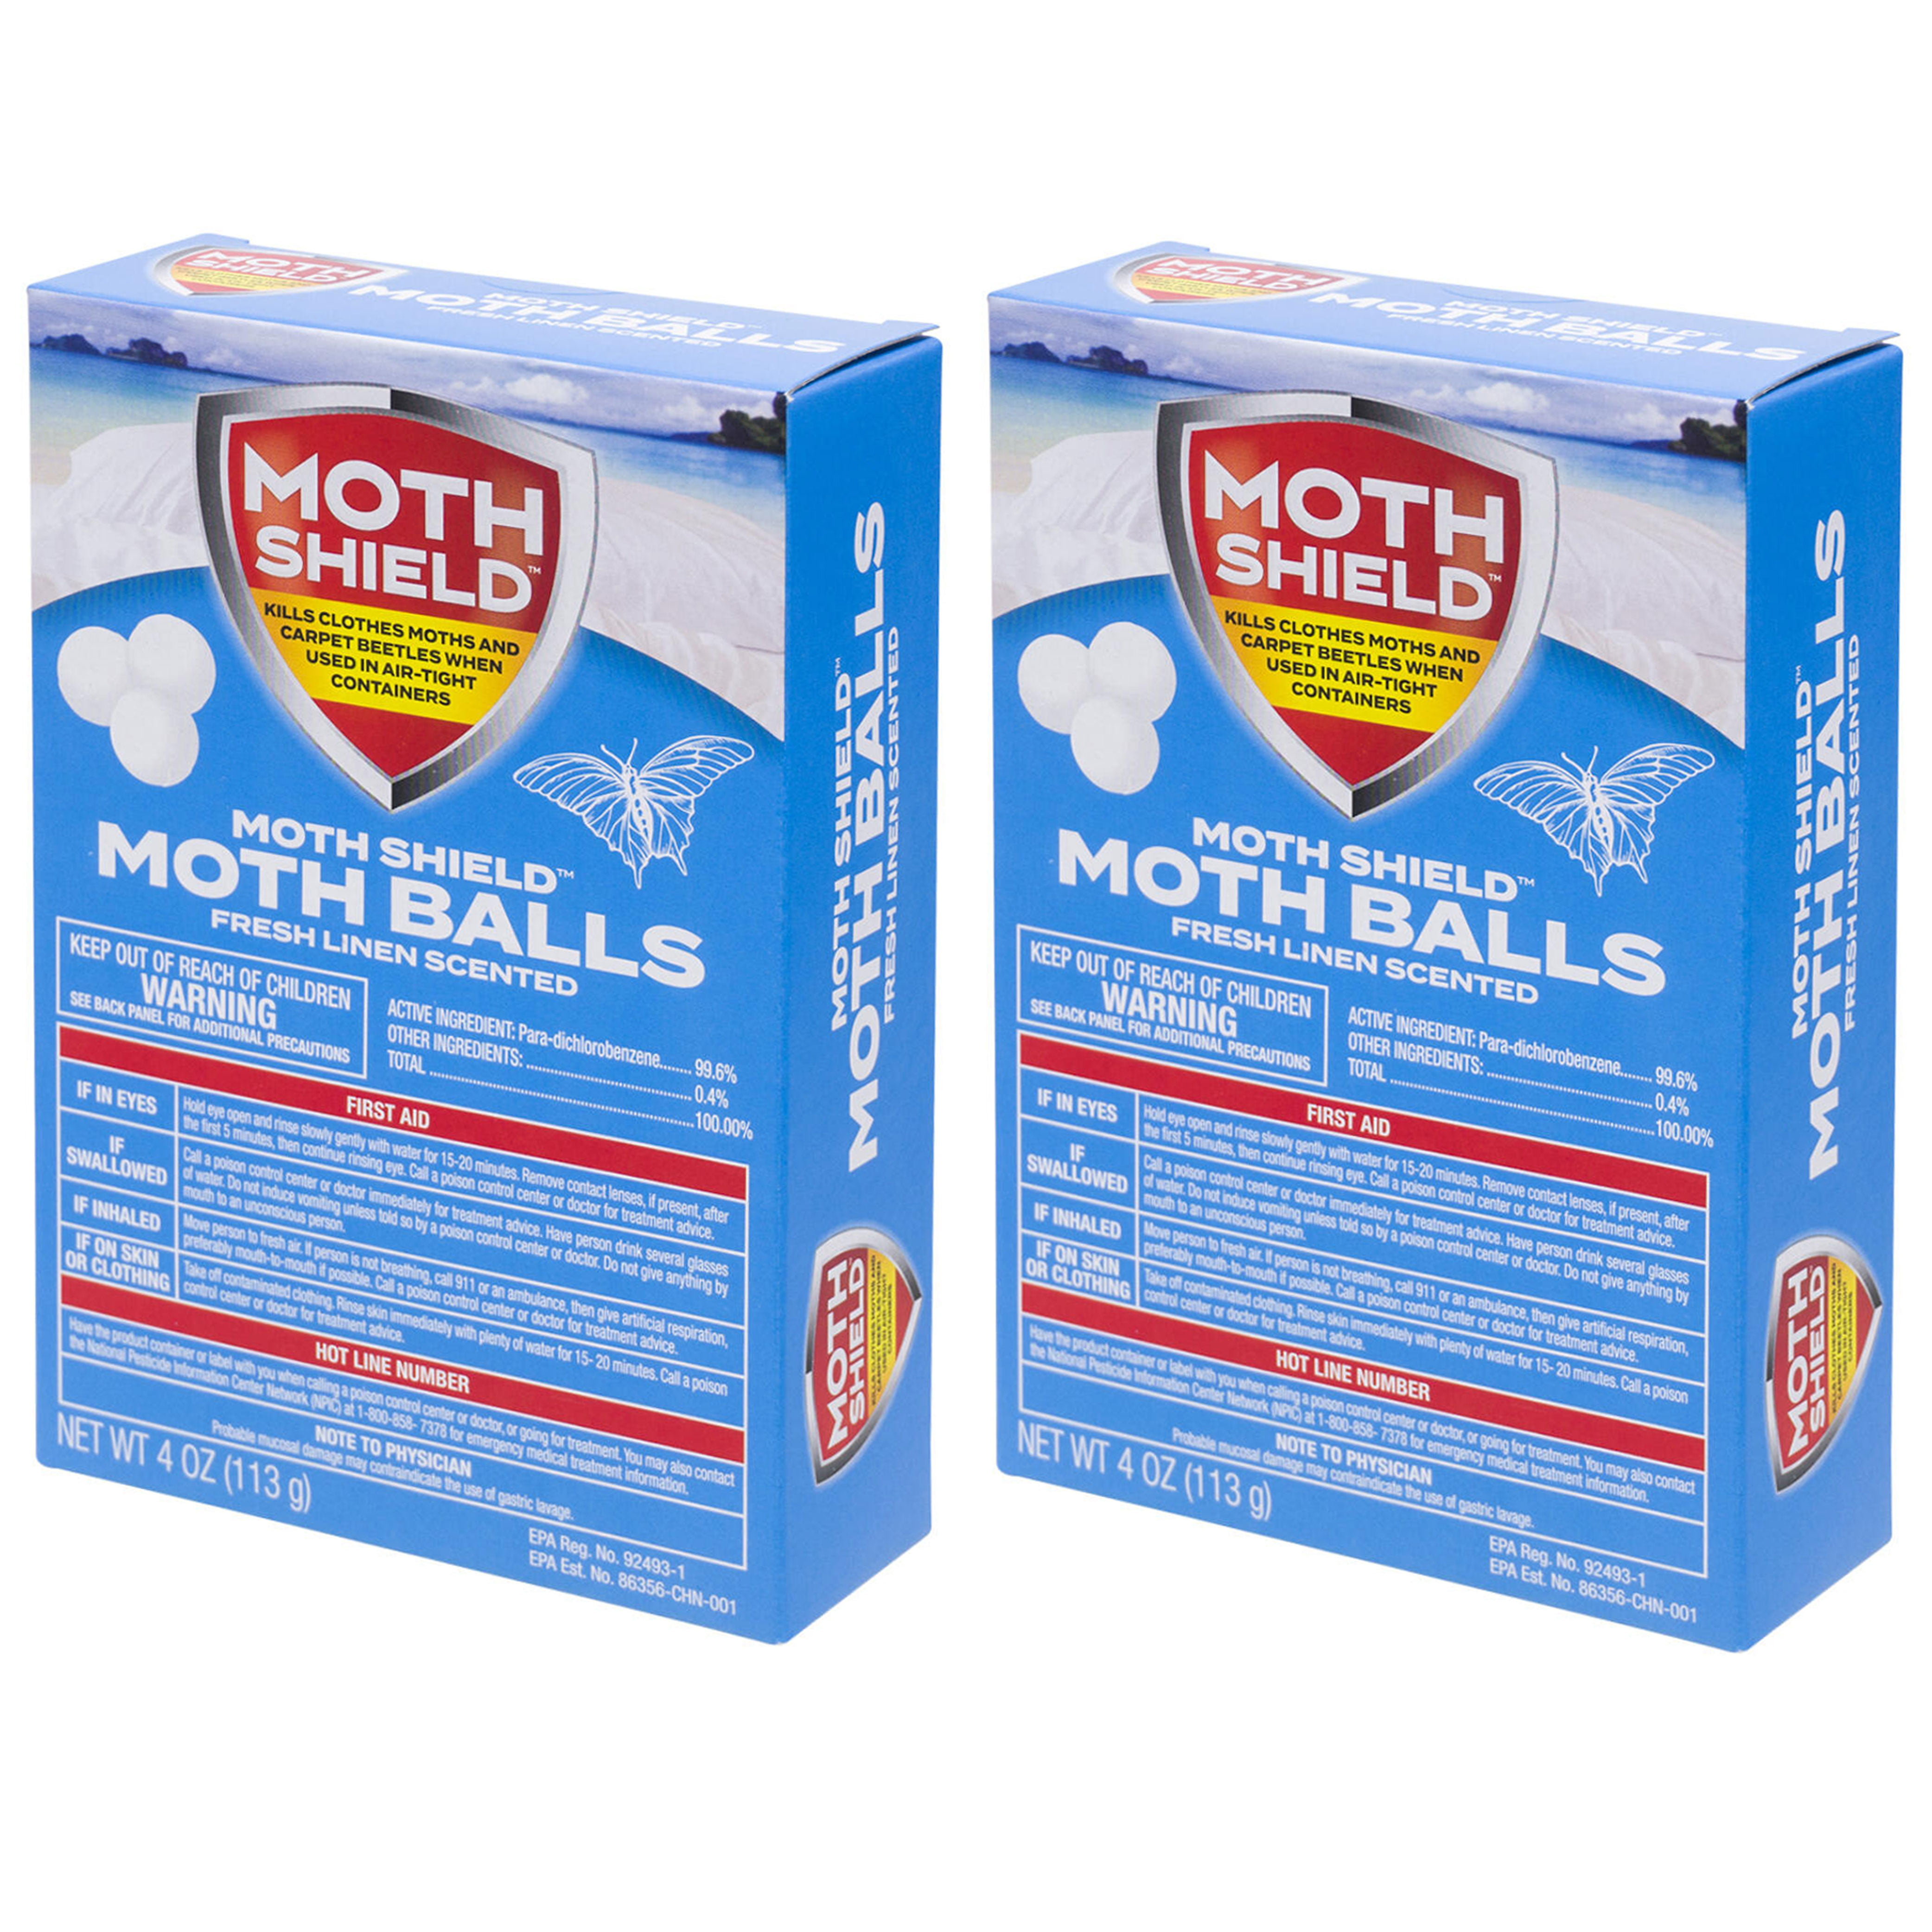 MothShield 4 Pack Old Fashioned Original Moth Balls, Carpet Beetles, Kills  Clothes Moth, Repellent Closet Clothes Protector, No Clinging